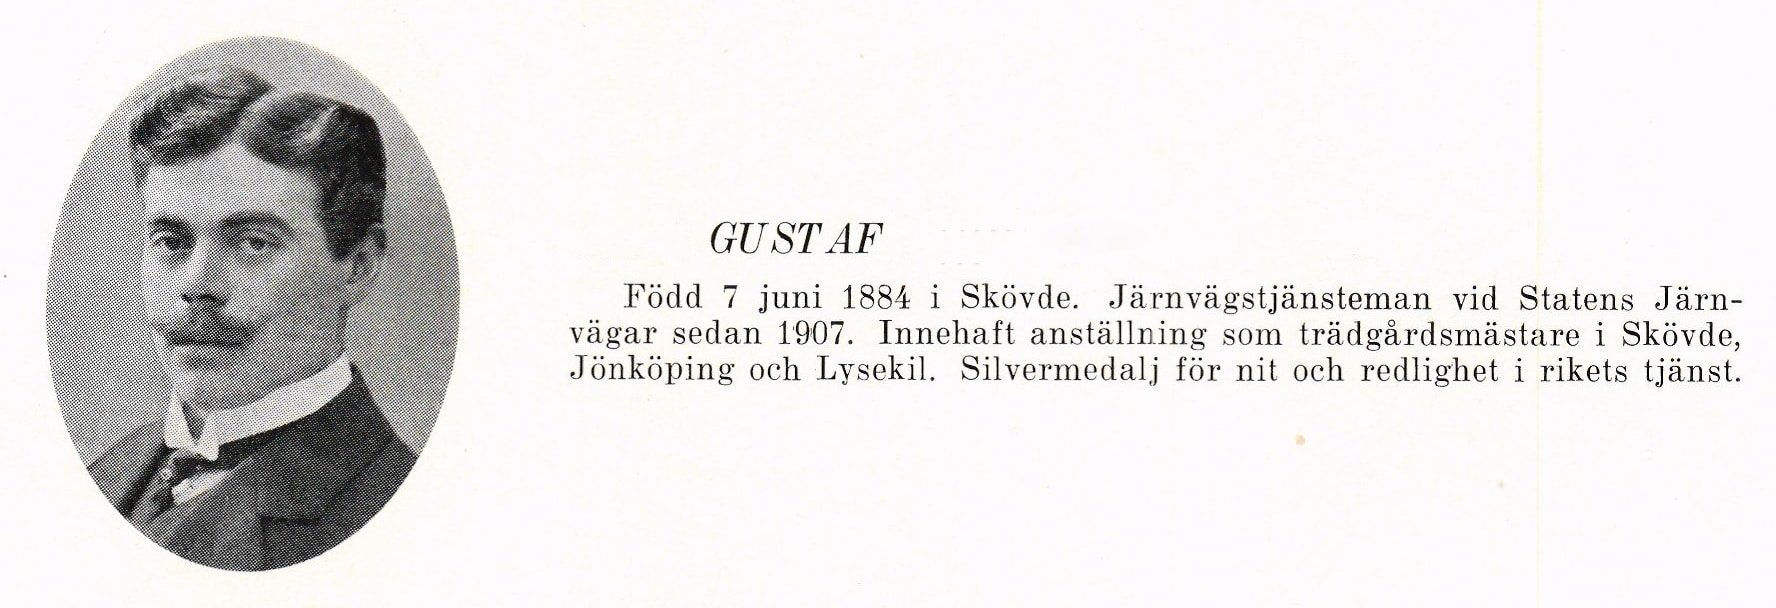 Barbro’s maternal grandfather Gustaf, Svenskt porträttarkiv